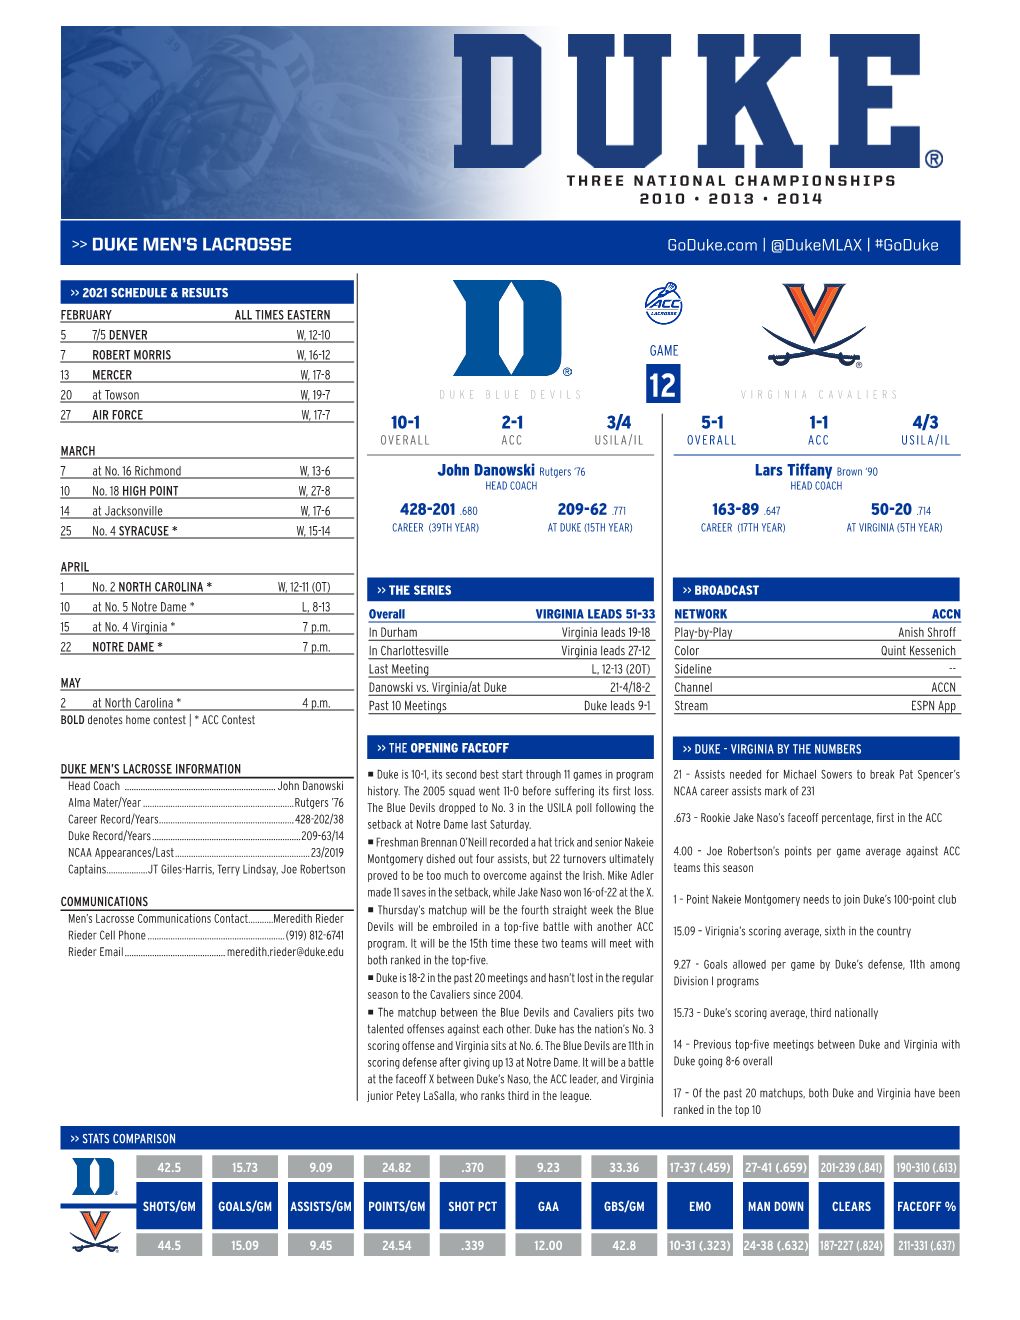 Duke Men's Lacrosse 10-1 2-1 3/4 5-1 1-1